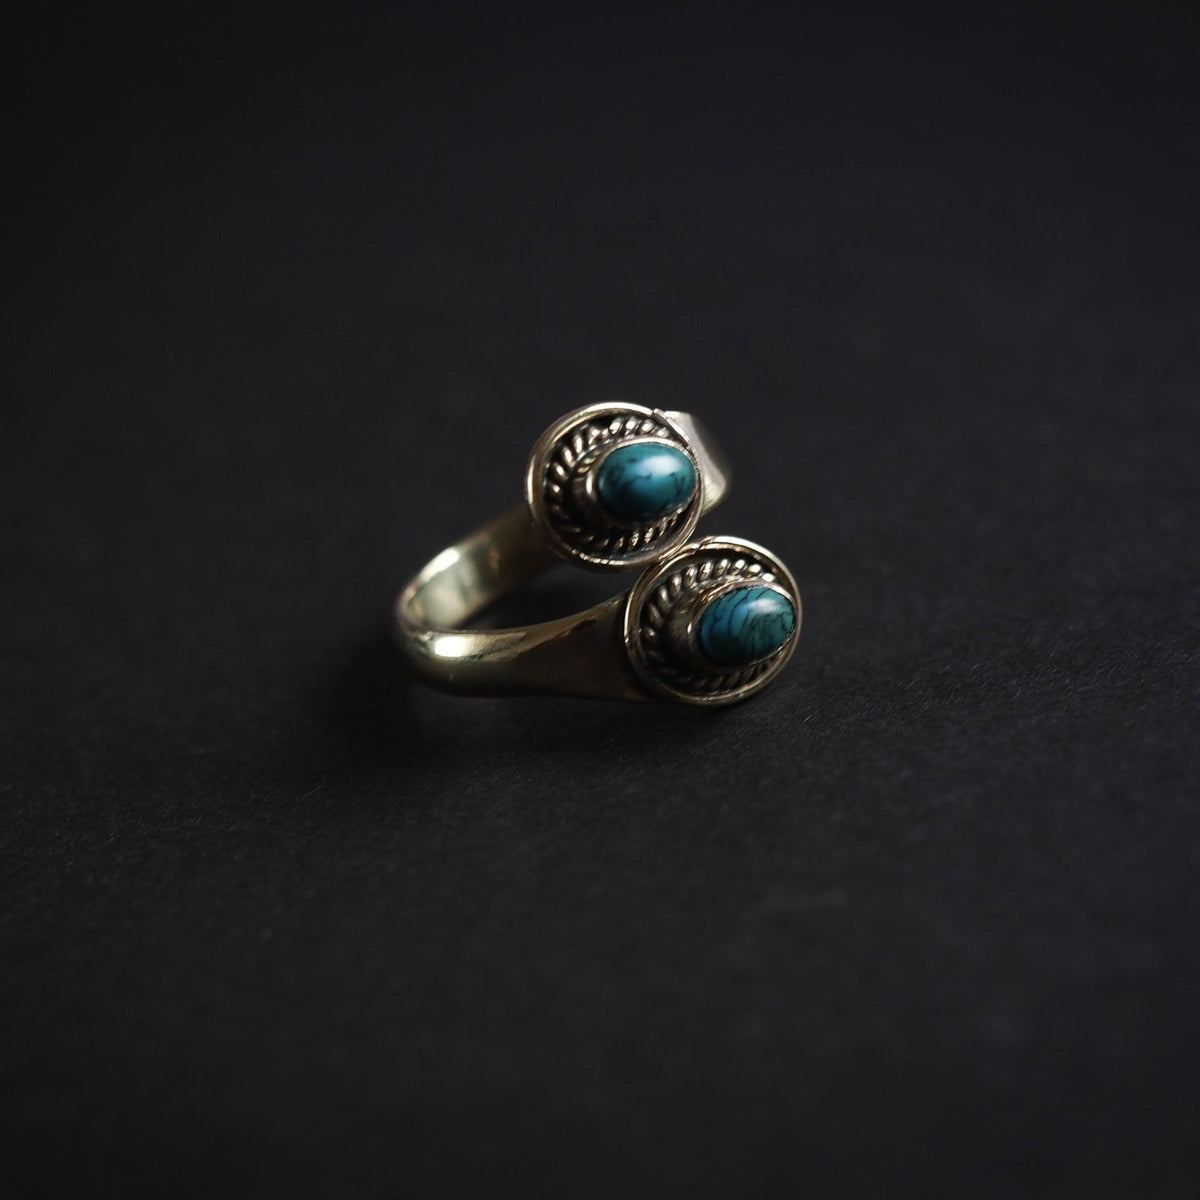 Turkos, mässing.Denna ring är designat som et öppet band om fingret. Mässingens är tillräckligt mjuk och flexibel till att ringen kan justeras i storlek efter behov.